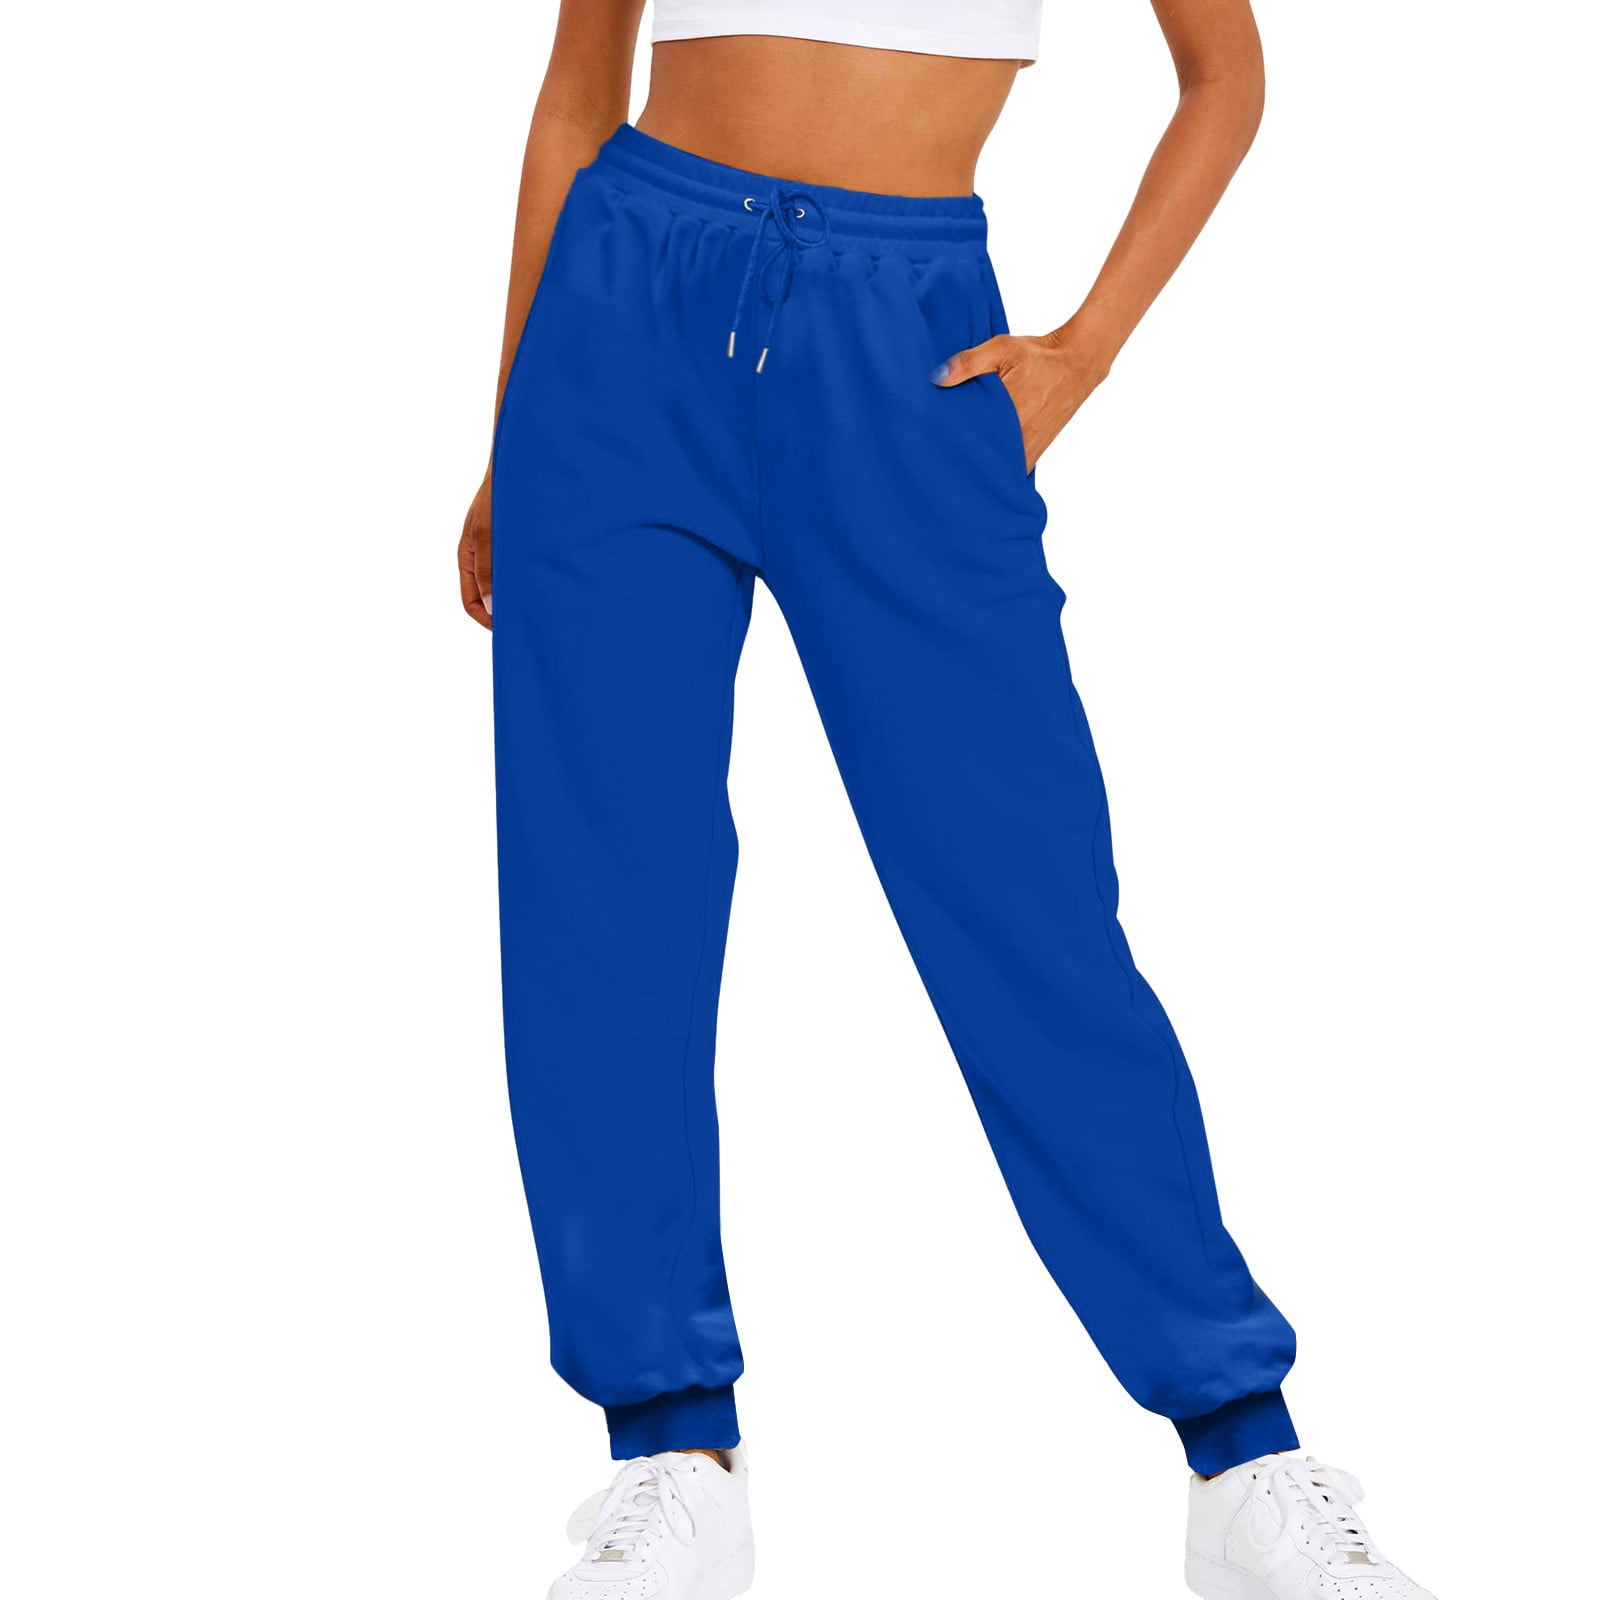 Buy Sweatpants for Women Online - Upto 50% Off